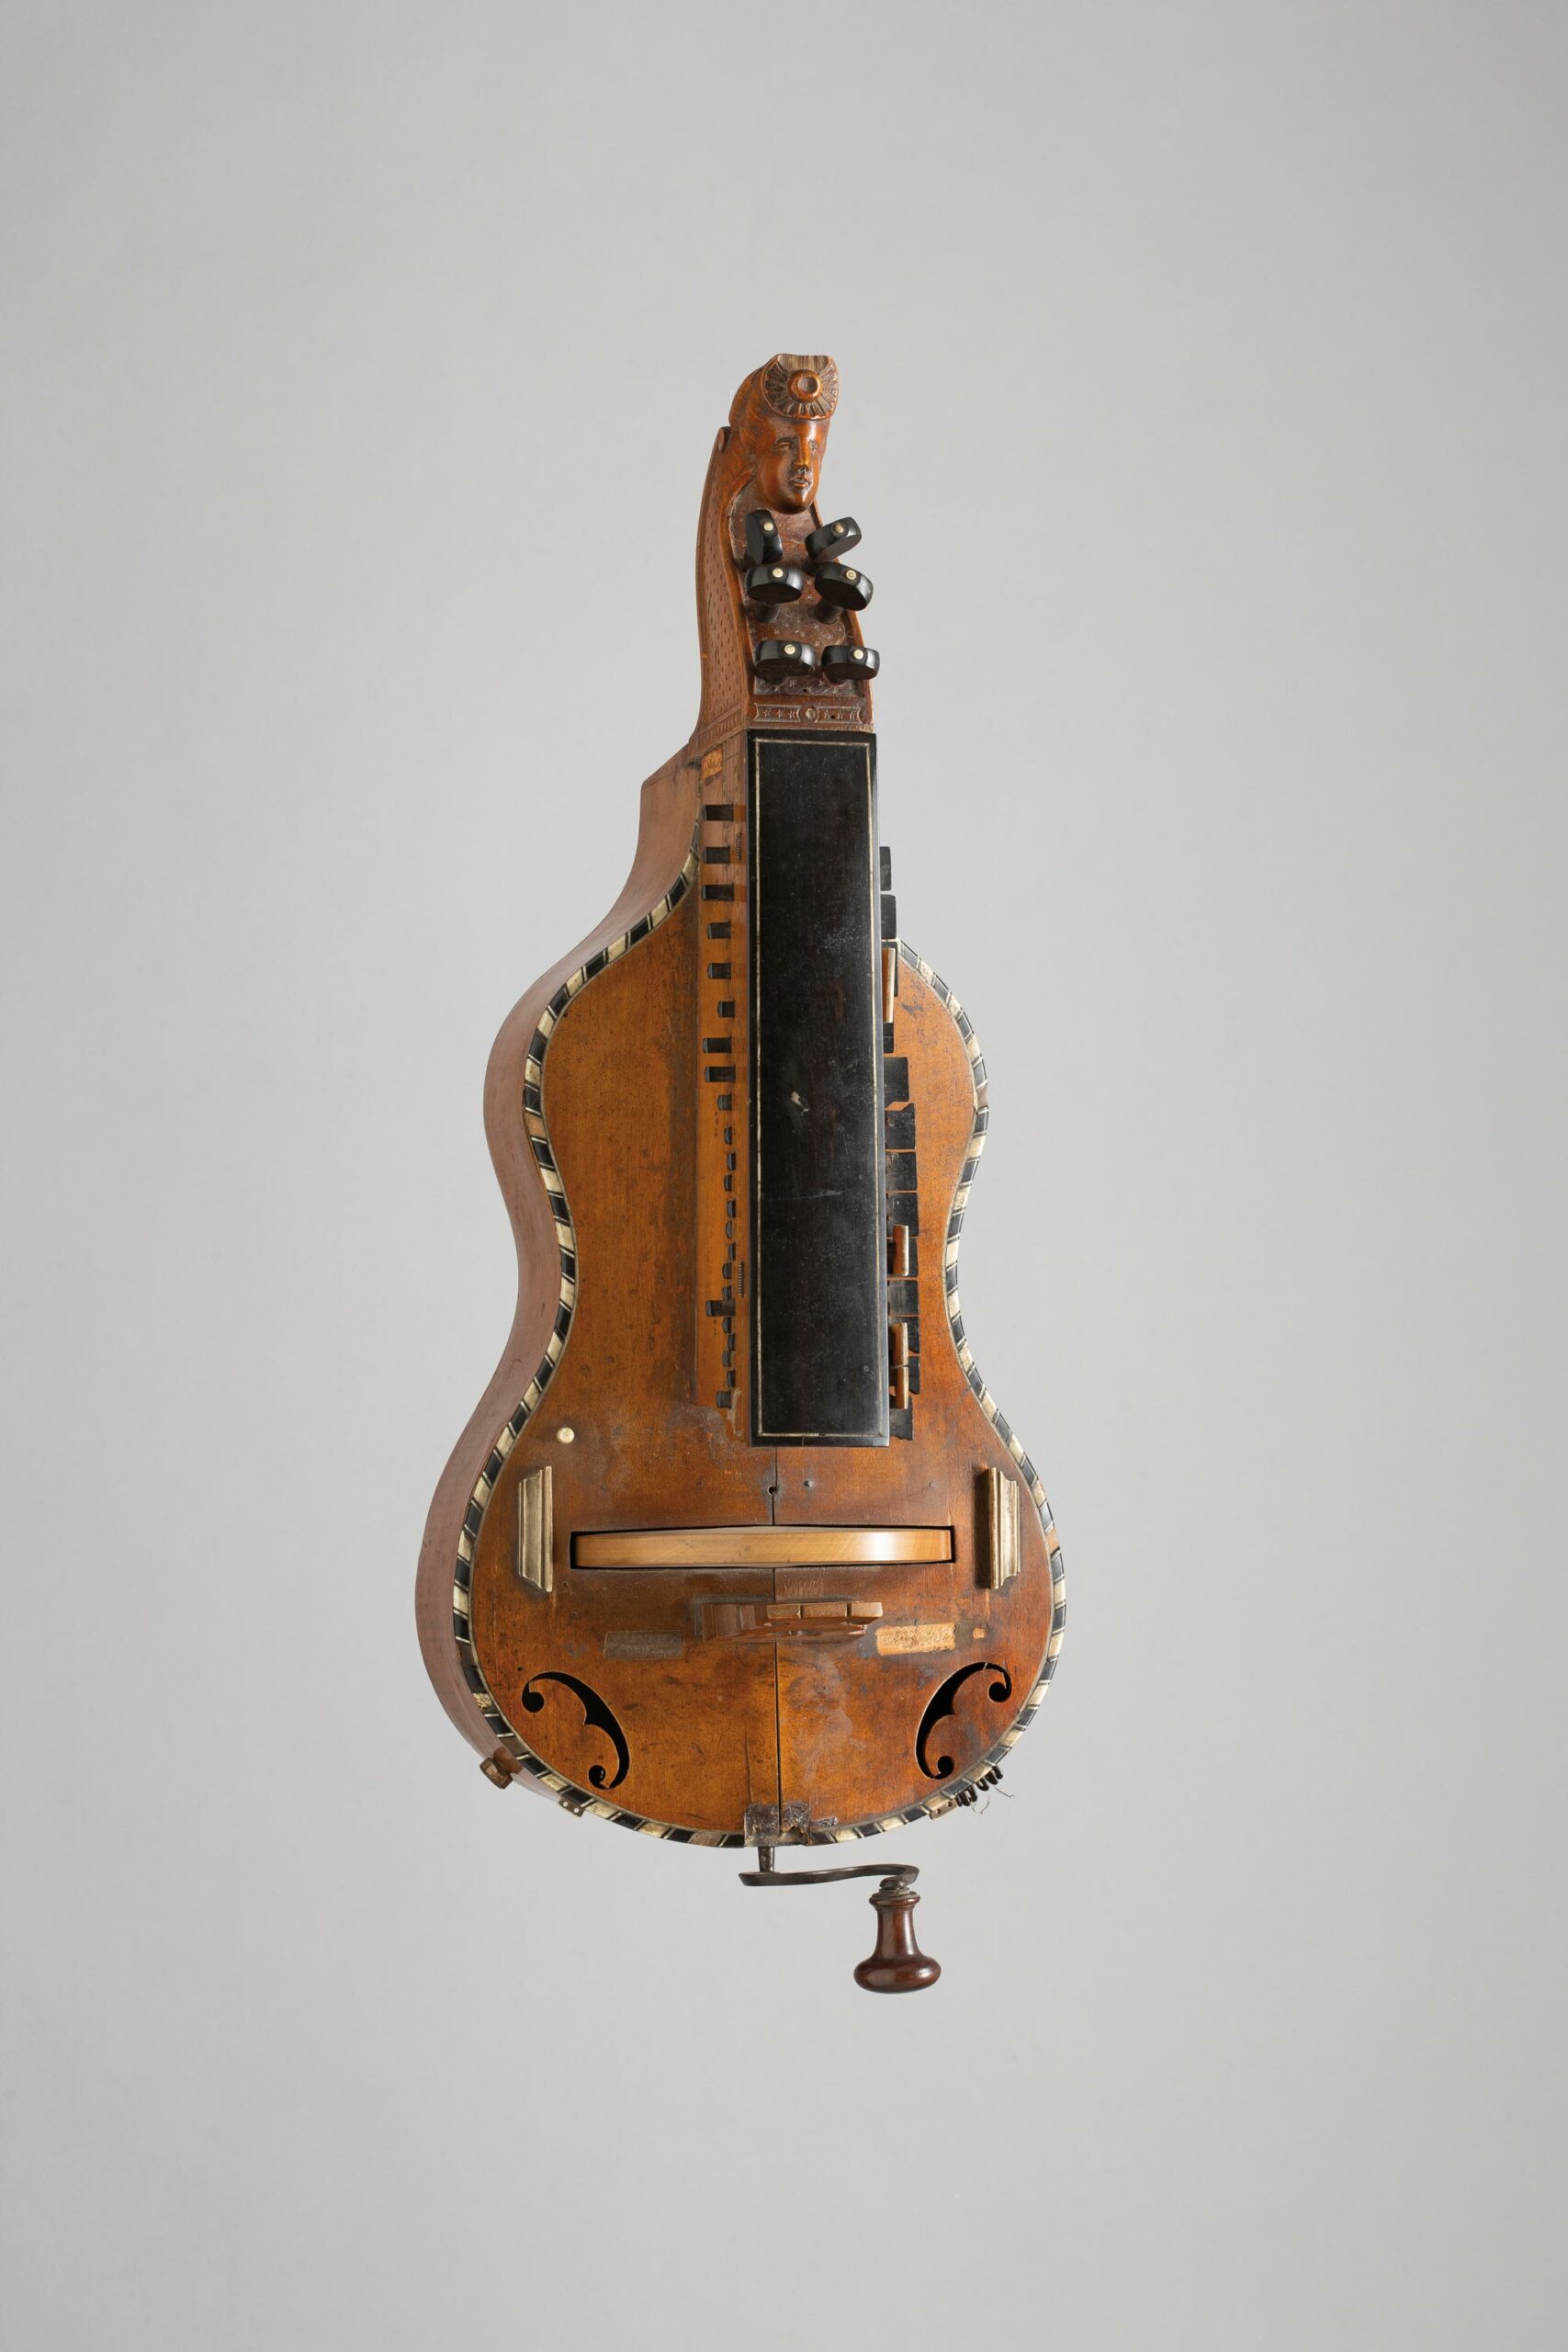 Vielle plate de Jean Nicolas JOMIER Instrument mis en vente par Vichy Enchères le 5 novembre 2022 © C. Darbelet